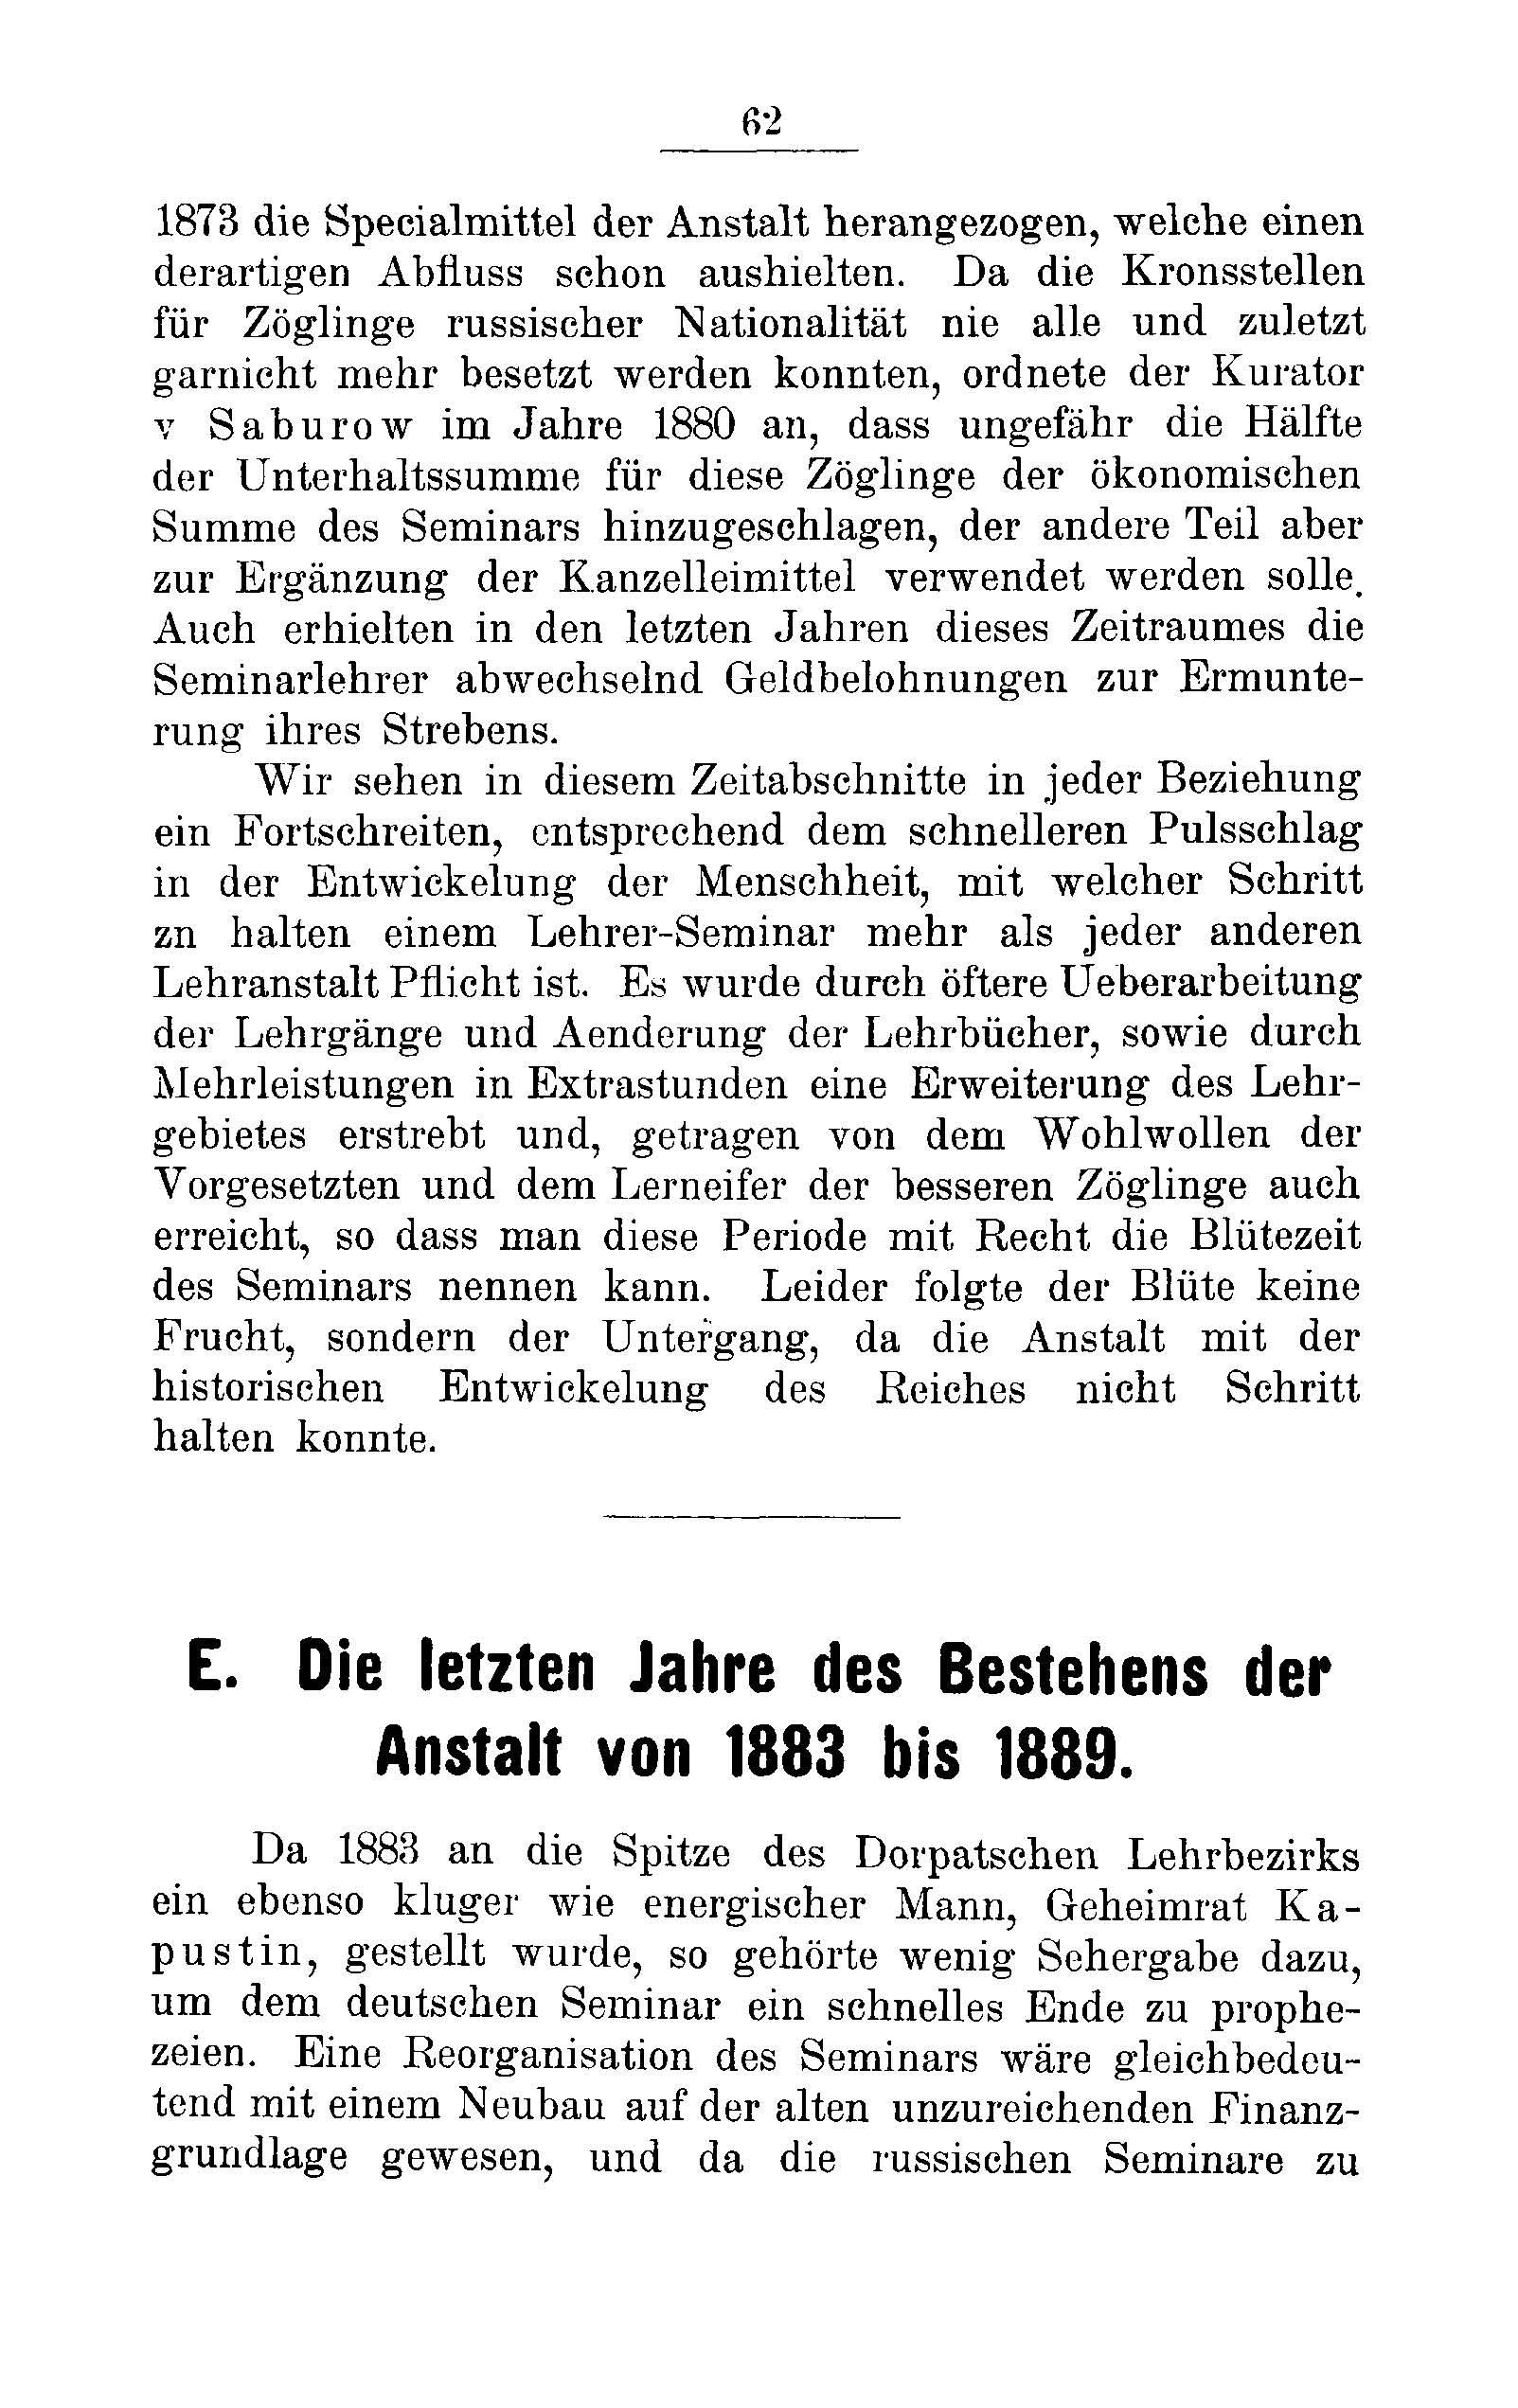 Das Erste Dorpatsche Lehrer-Seminar (1890) | 65. Main body of text